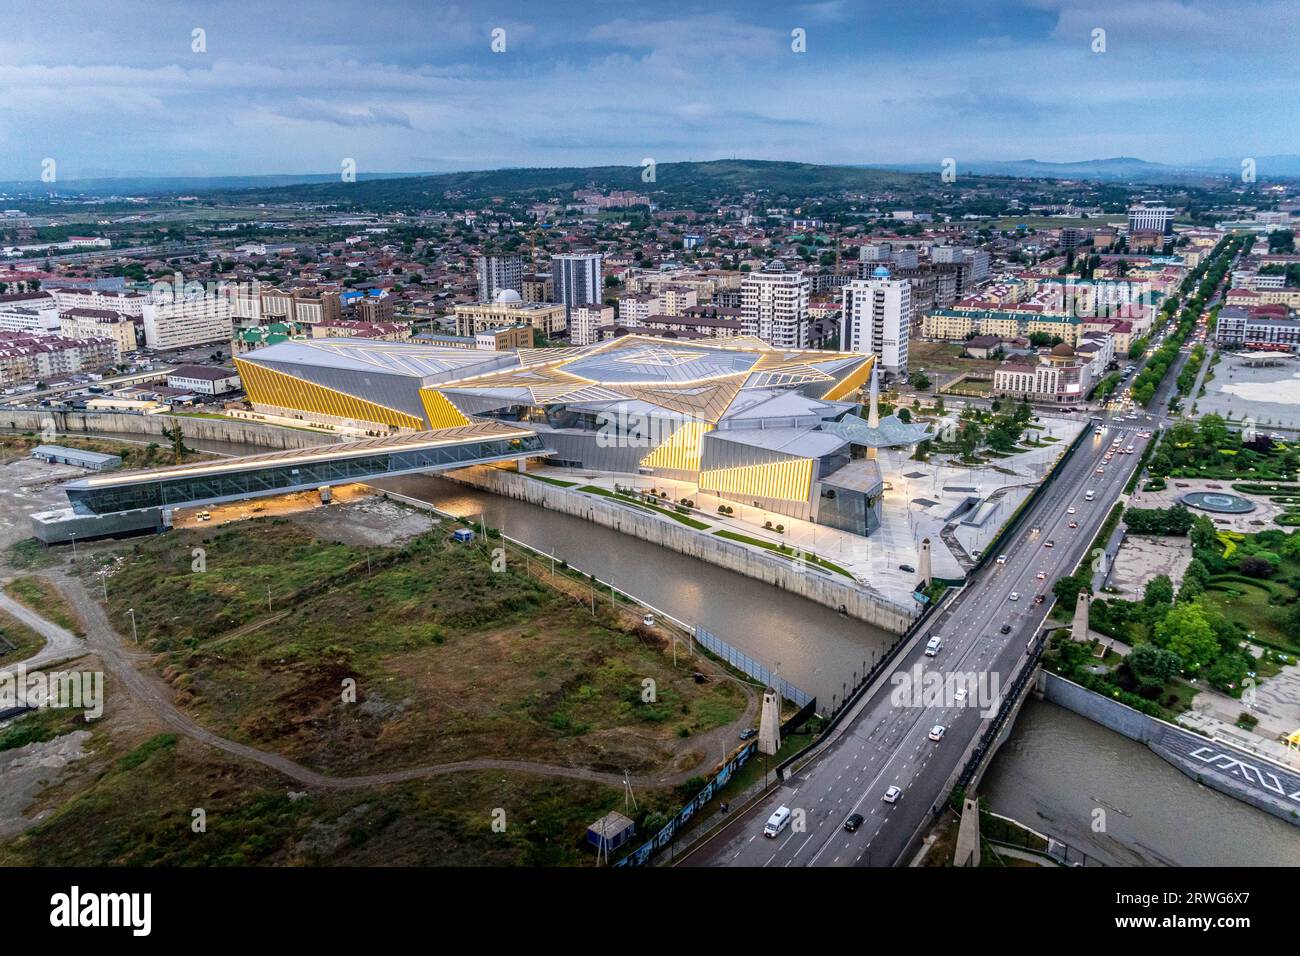 Blick auf die Stadt Grosny, Grosny Mall und Sunzha River in Tschetschenien (Tschetschenien) in Russland. Stockfoto